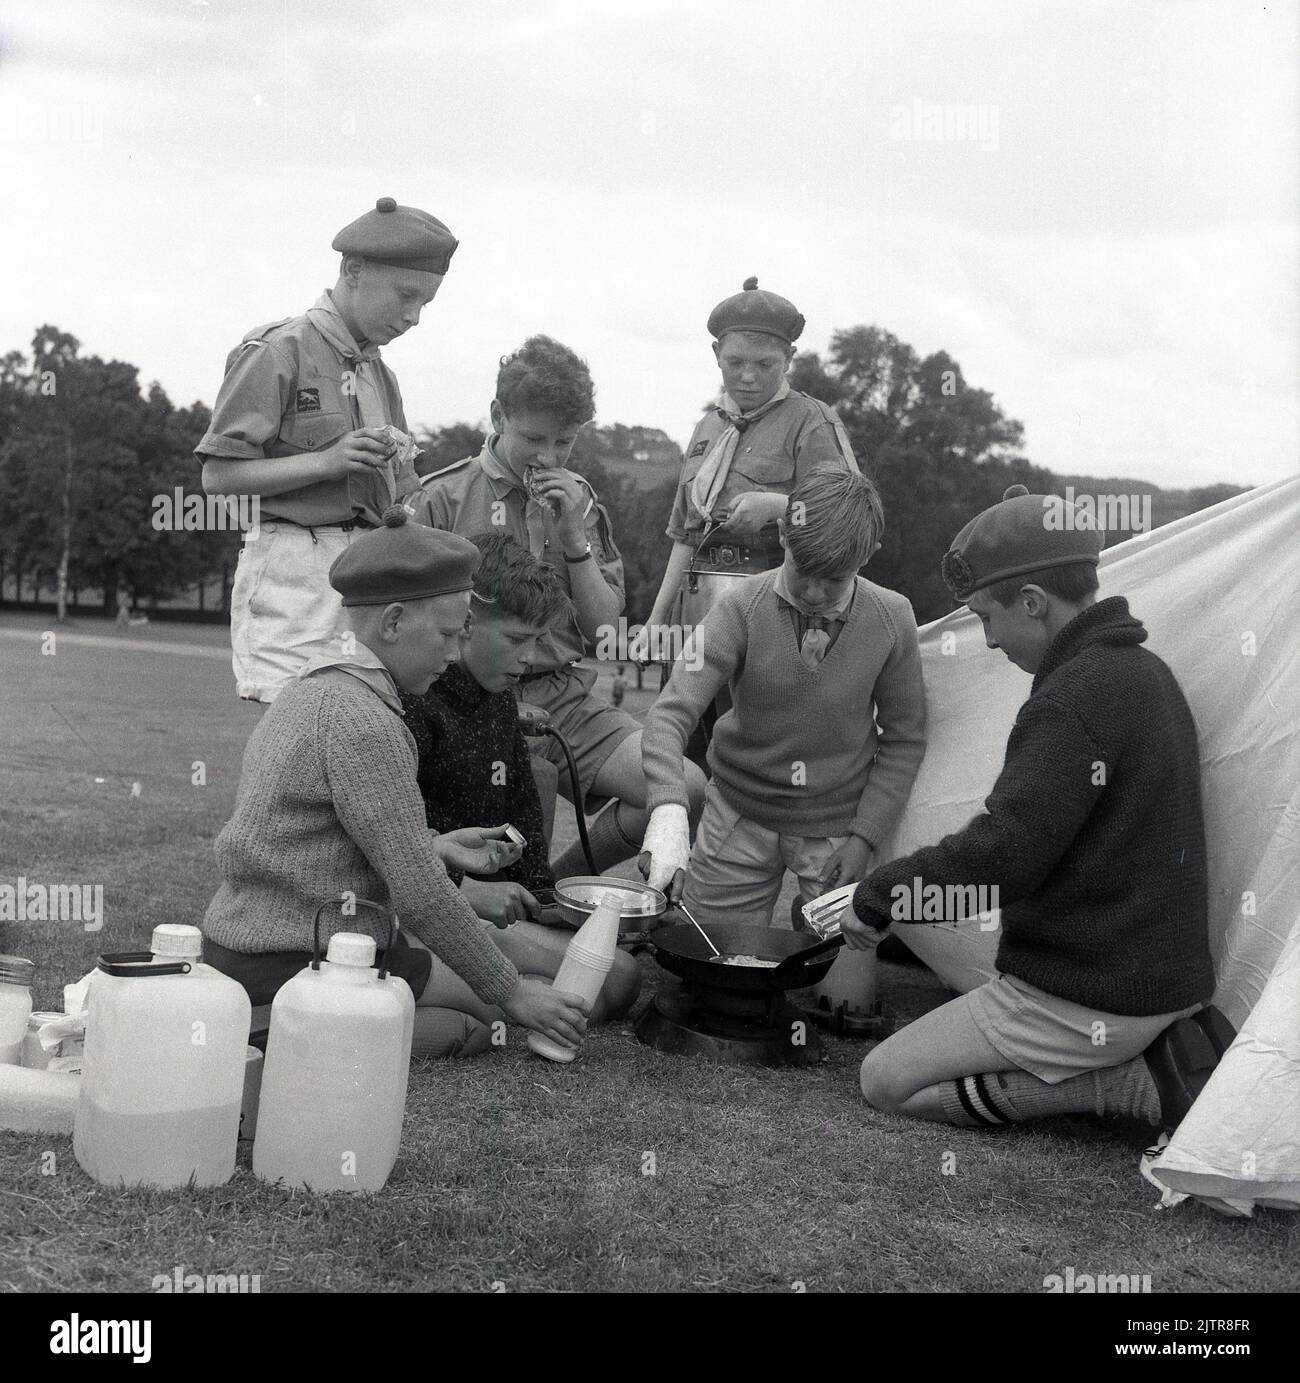 1965, historisch, Scouting in the Glen, Junge Scouts in Uniform und Barets, Kochen von Essen im Freien auf dem Gras vor einem Zelt, Schottland, Großbritannien, sieht aus wie Omelettes...... Stockfoto